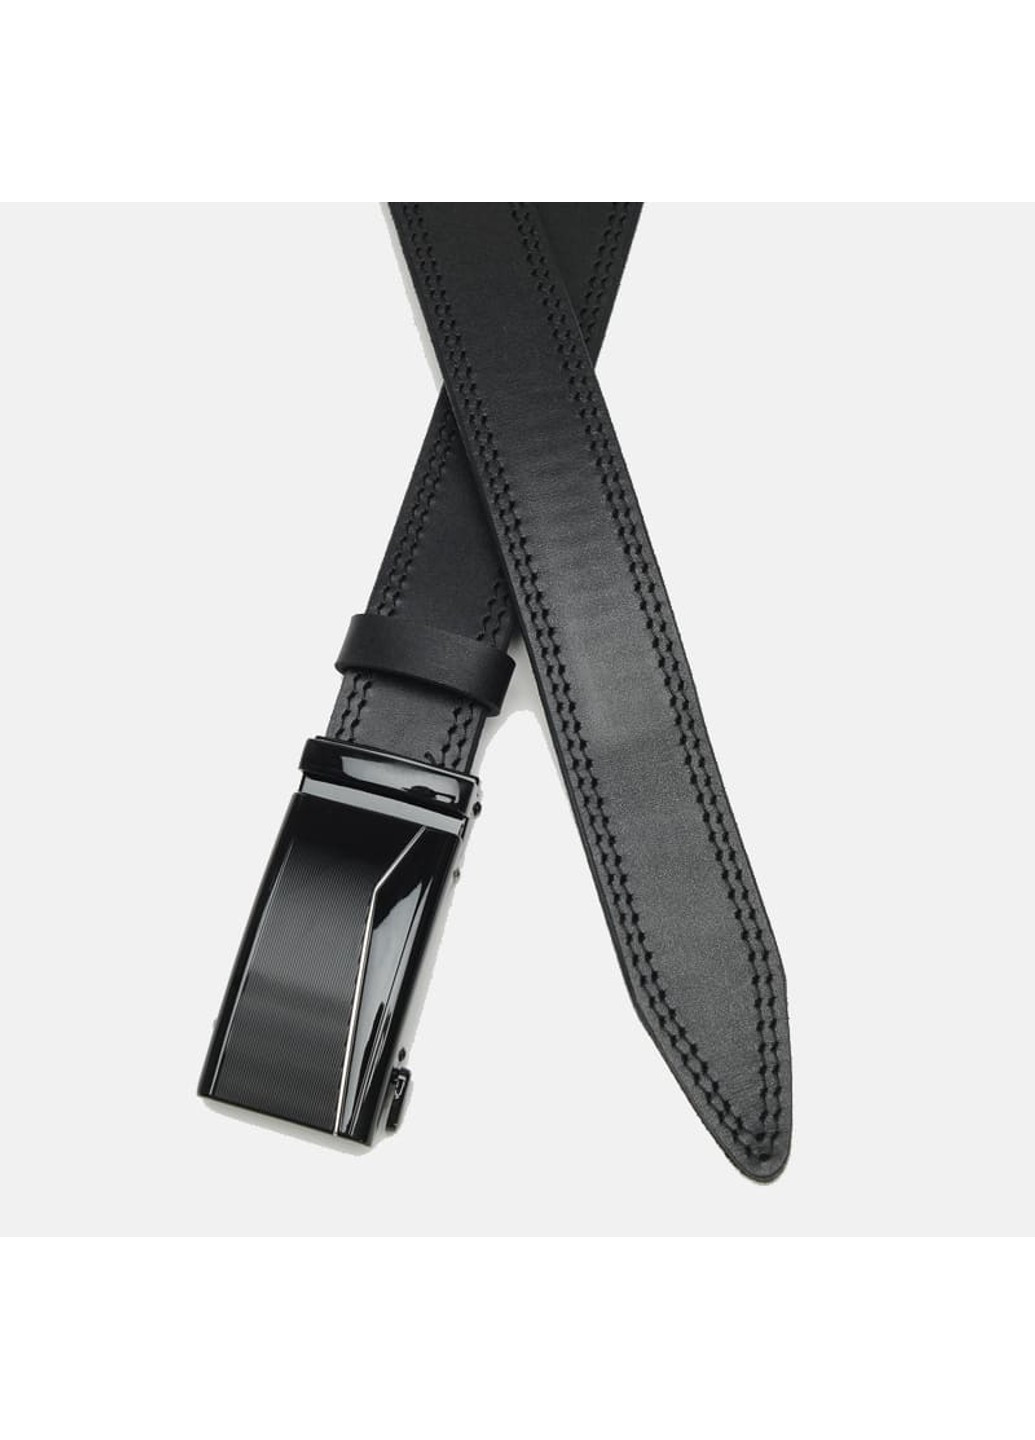 Мужской кожаный ремень с пряжкой автомат CV1gnn32-125 Borsa Leather (266144009)